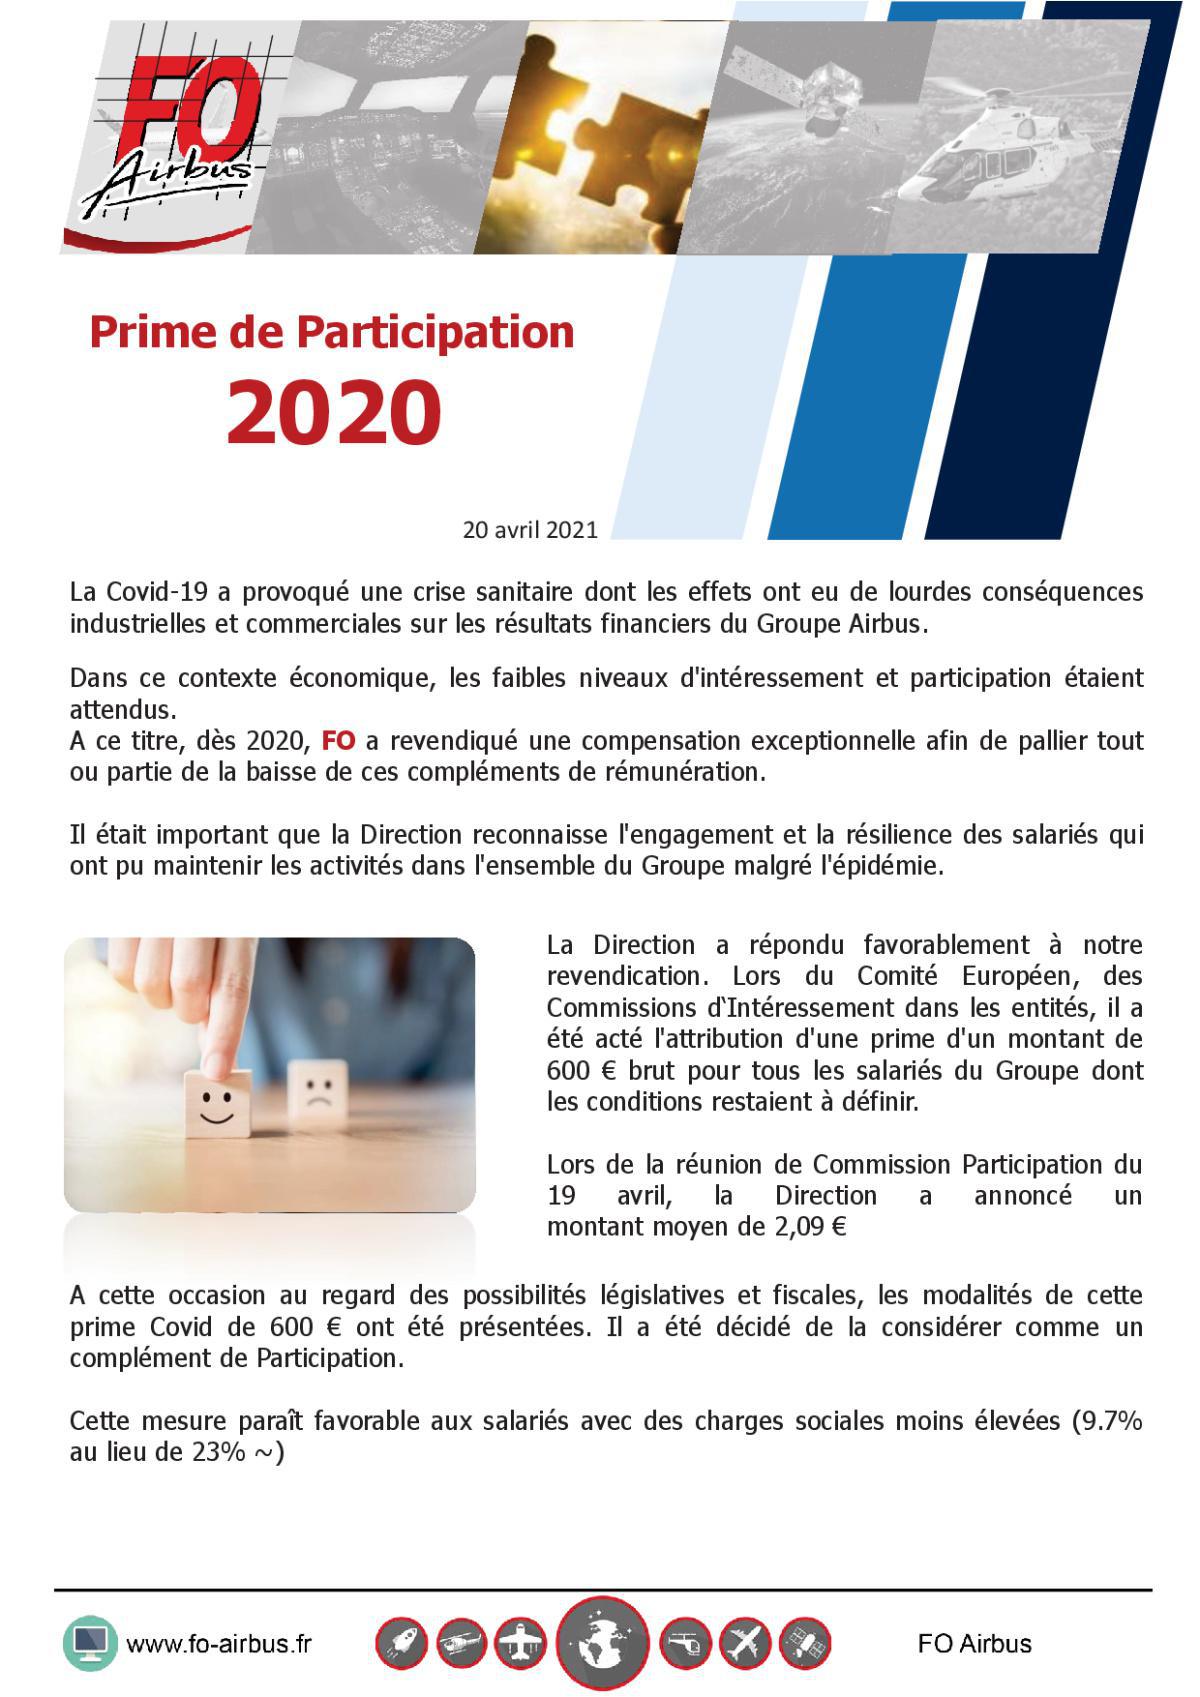 Prime de Participation 2020